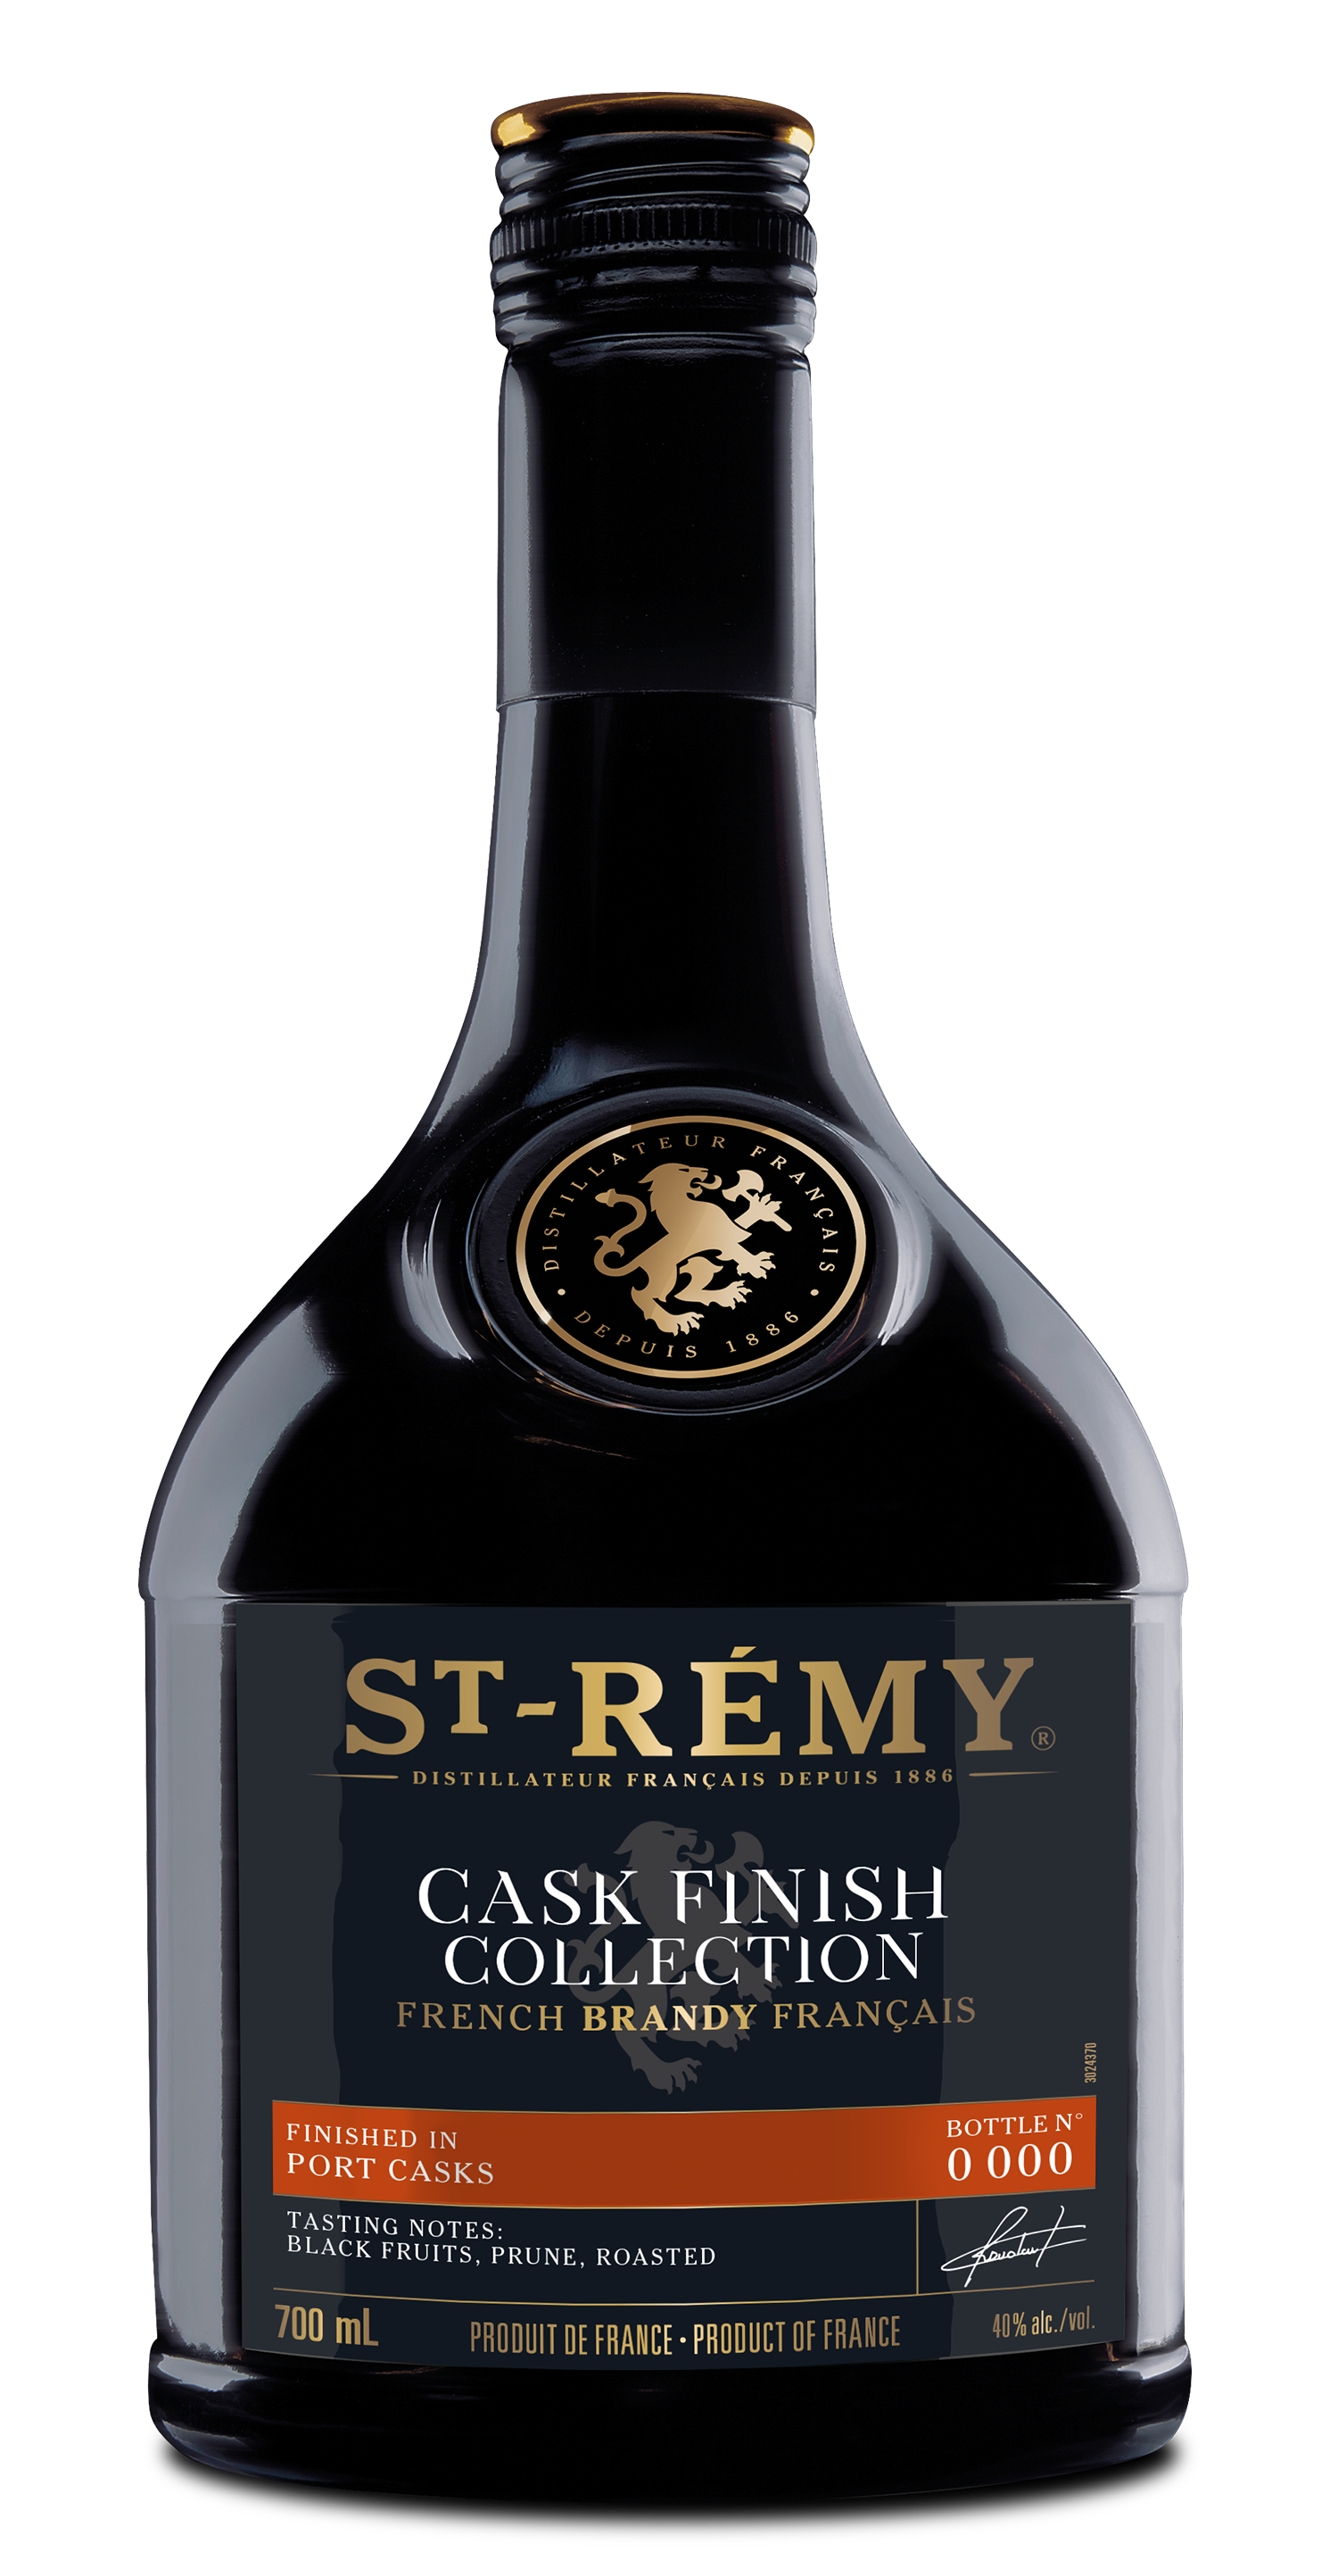 St-Rémy Finished in Port Casks - St-Rémy – 100% French Brandy